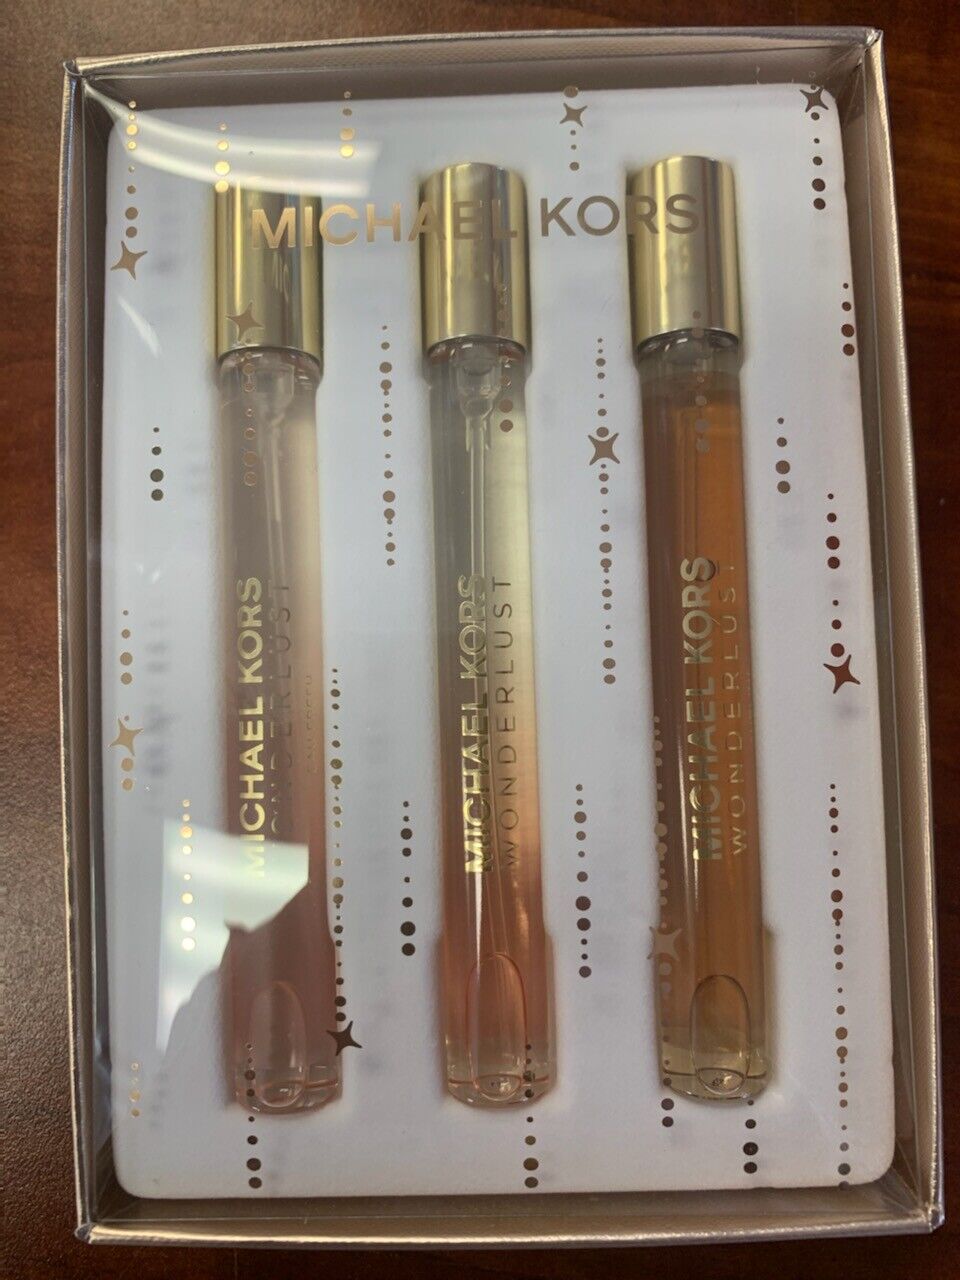 Michael Kors Wonderlust TRIO Womens Fragrance Gift Set NEW IN BOX